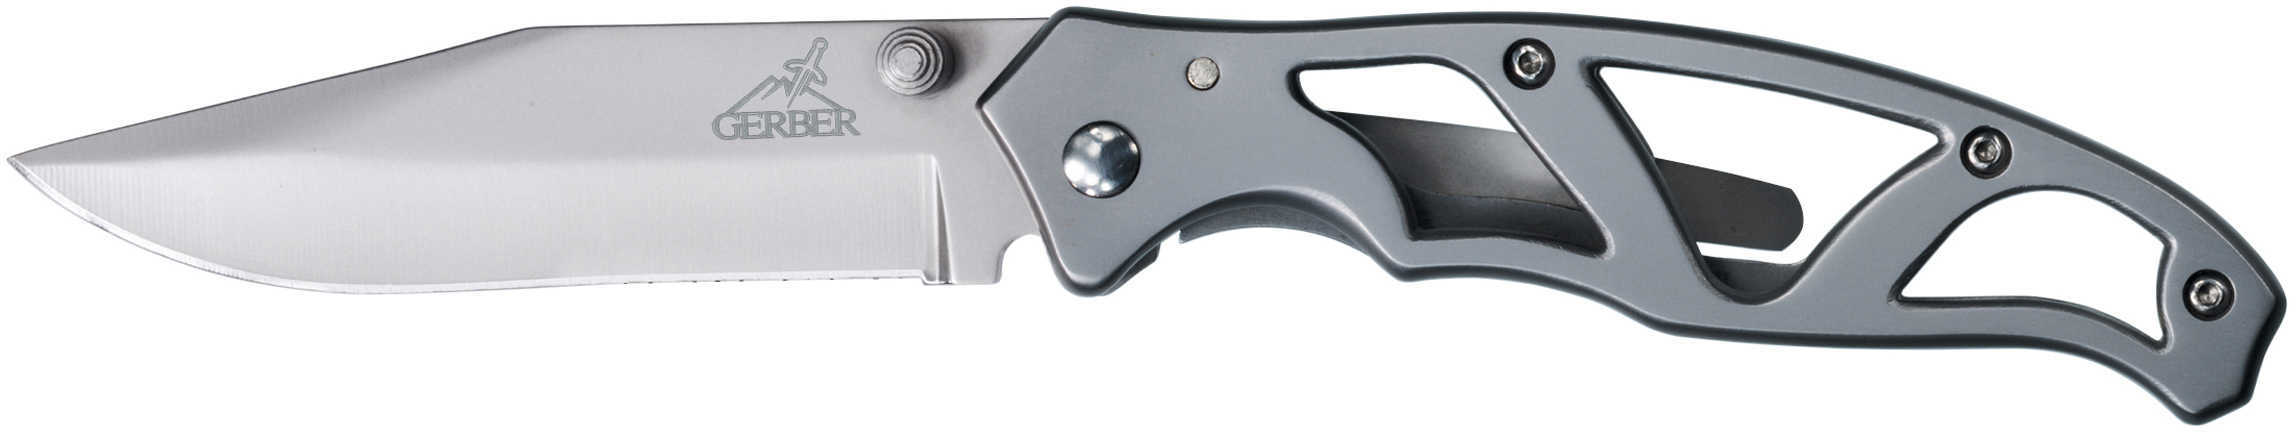 Gerber Paraframe I Pocket Knife Stainless Fine Edge Model: 22-48444